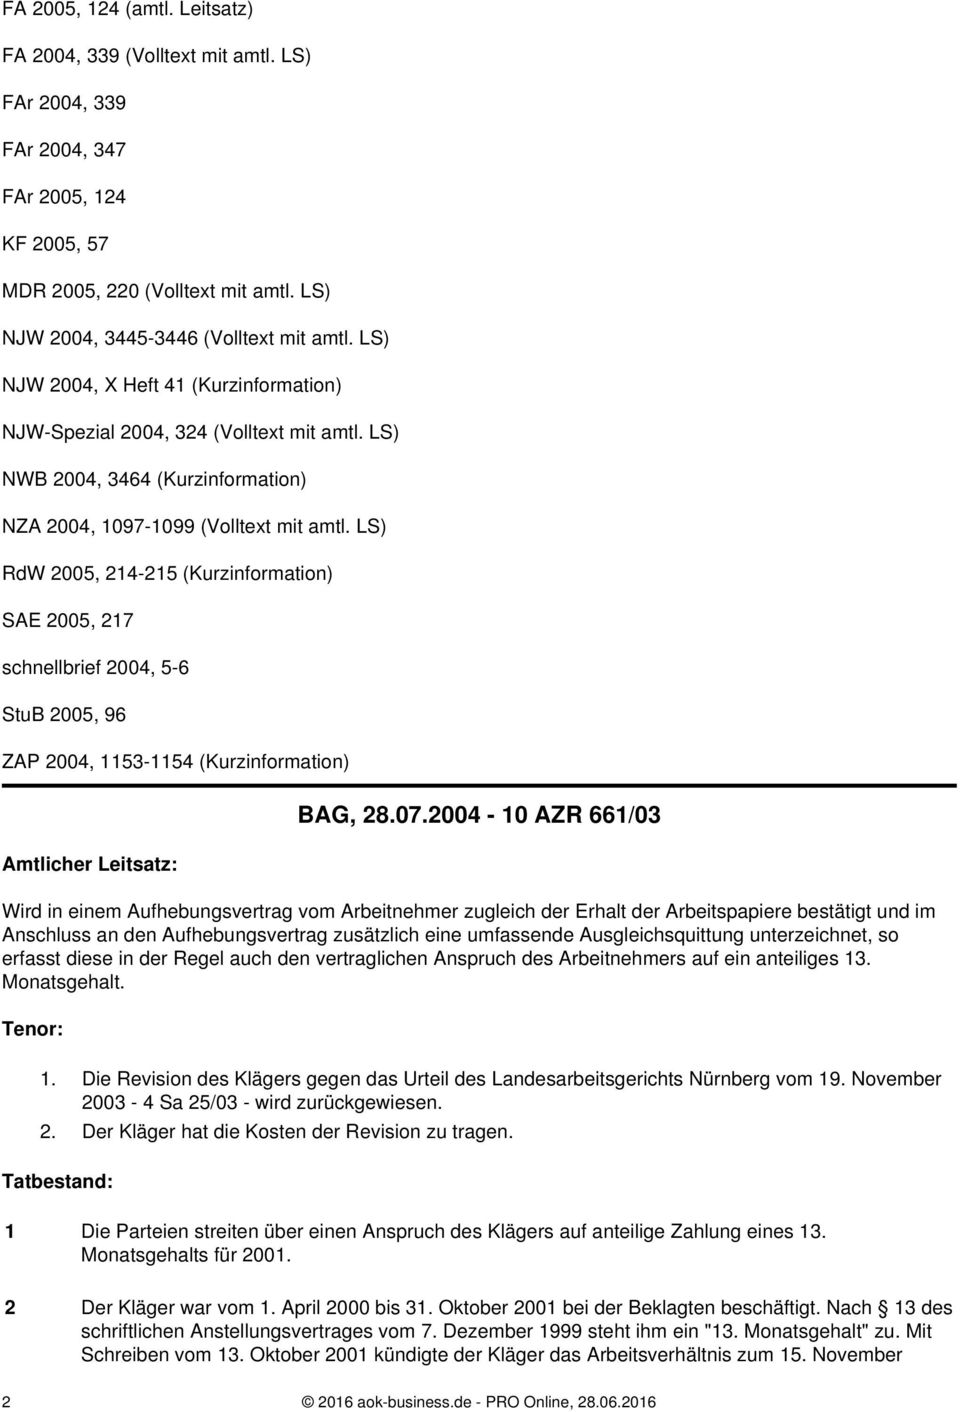 LS) RdW 2005, 214-215 (Kurzinformation) SAE 2005, 217 schnellbrief 2004, 5-6 StuB 2005, 96 ZAP 2004, 1153-1154 (Kurzinformation) Amtlicher Leitsatz: BAG, 28.07.